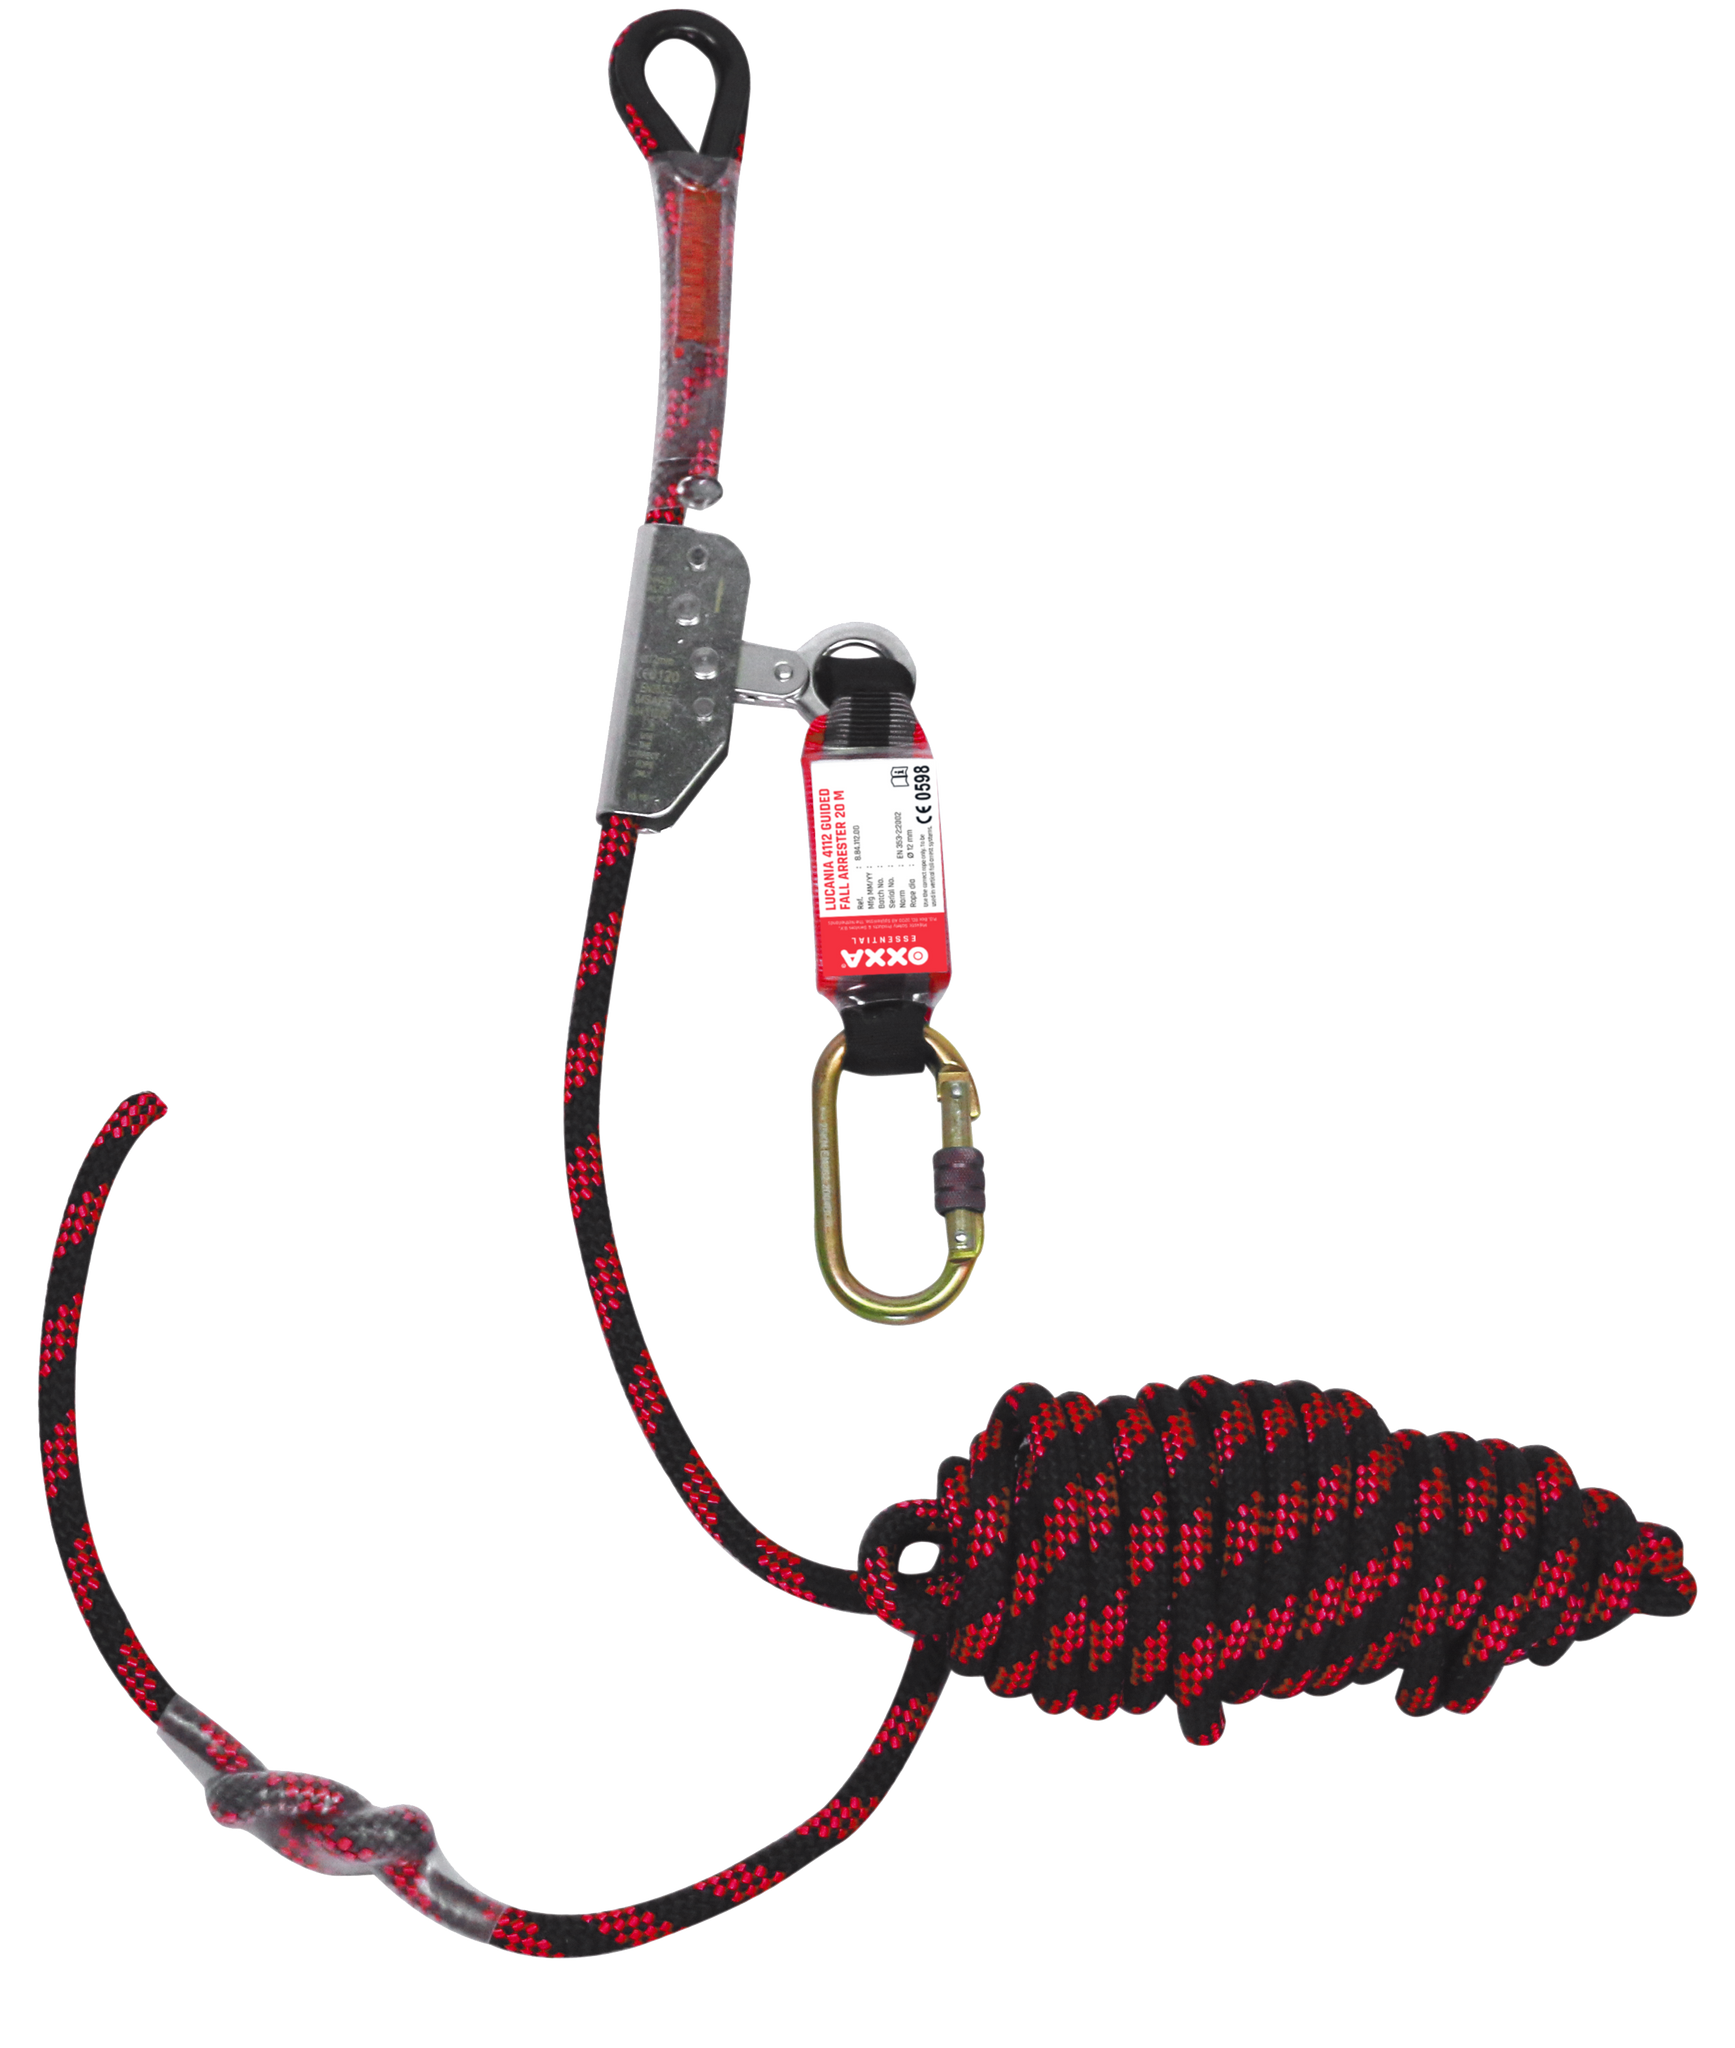 OXXA® Lucania 4112 rope Grab valstopapparaat met valdemper en lijn